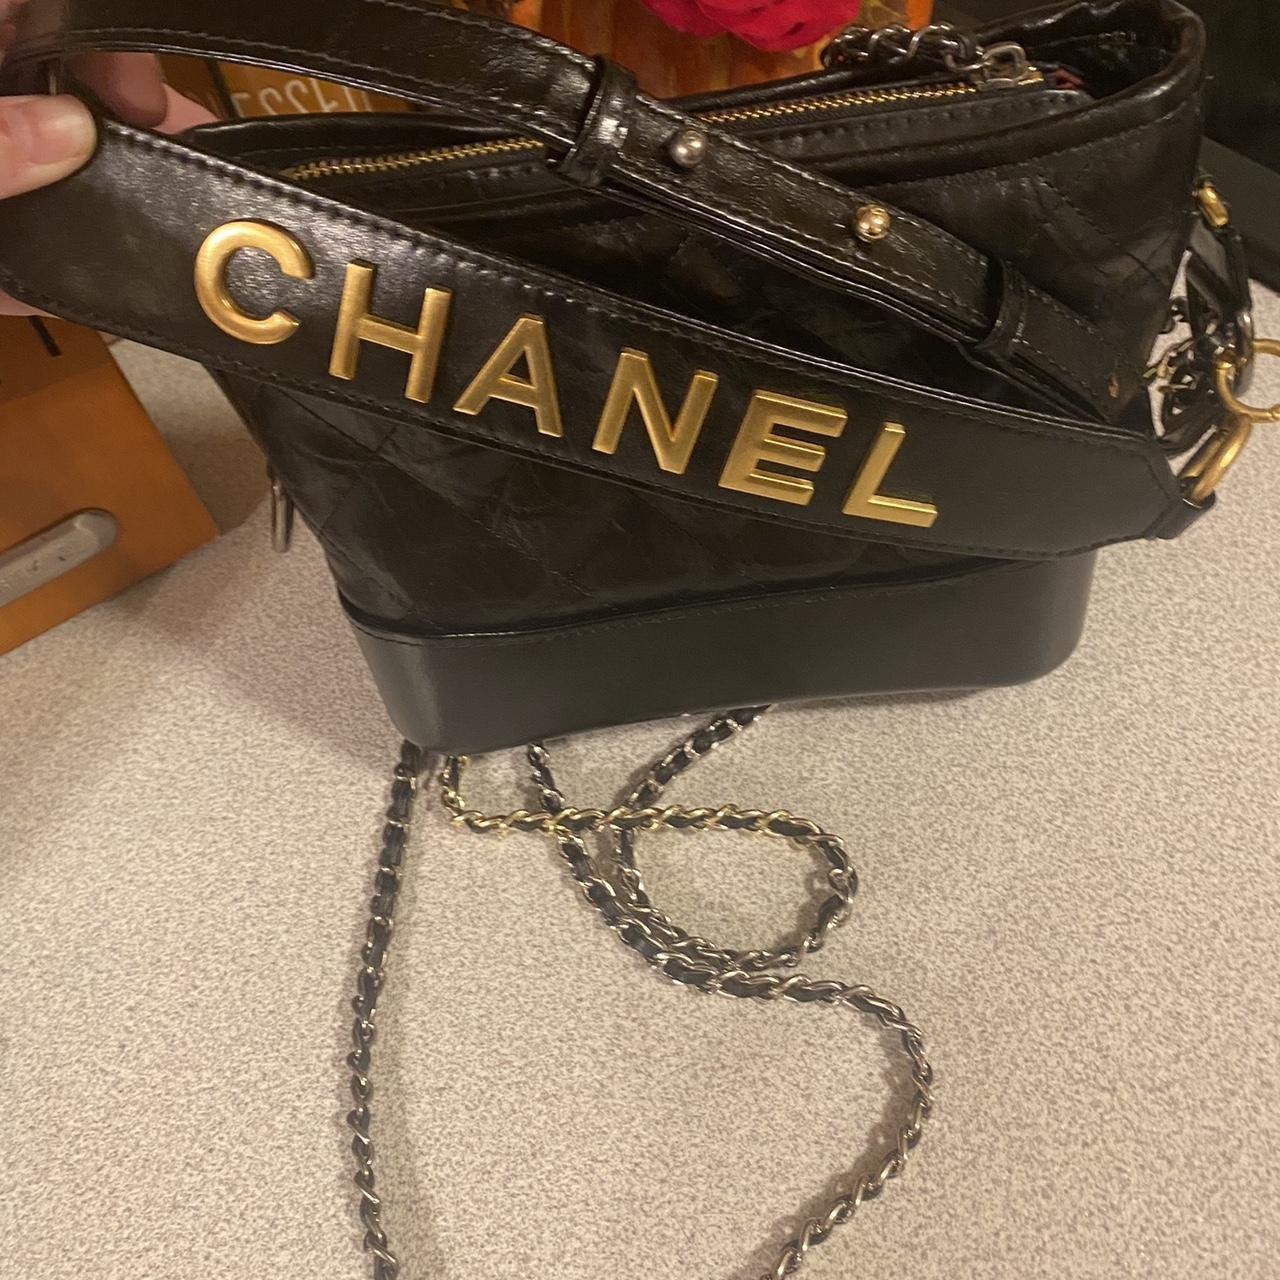 Chanel bag black leather - Depop